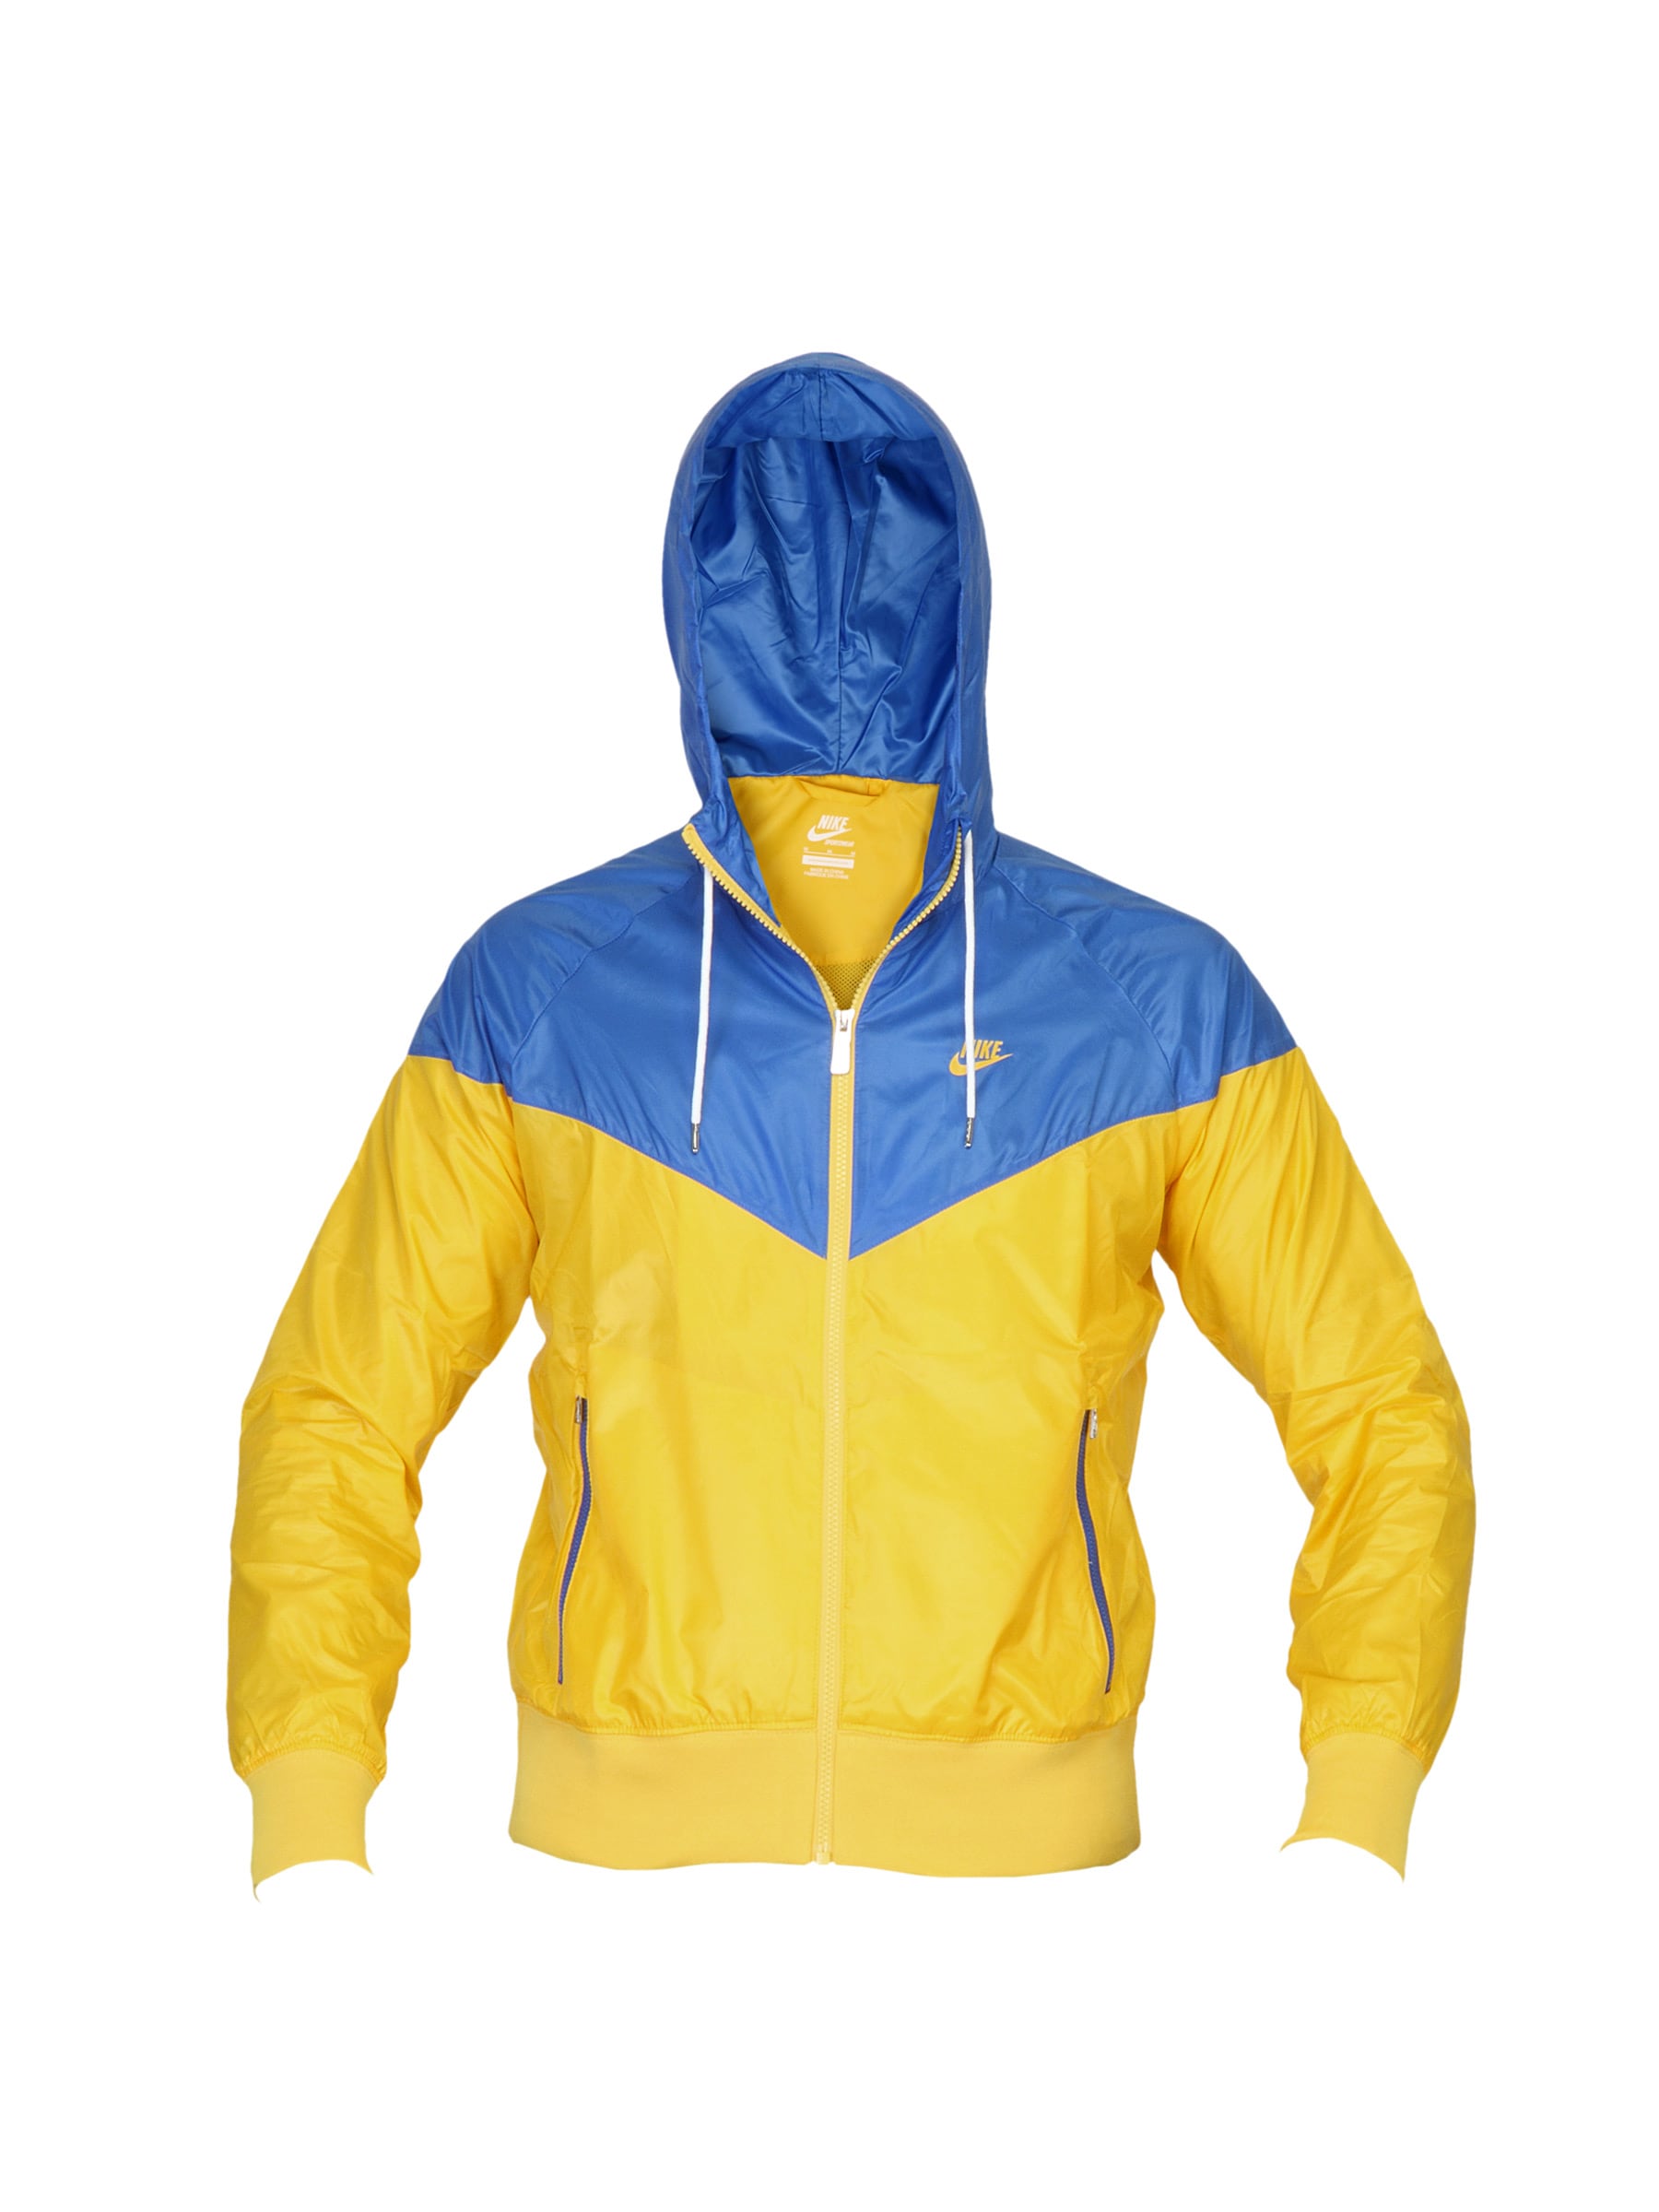 Nike Men Windrunner Yellow Jacket